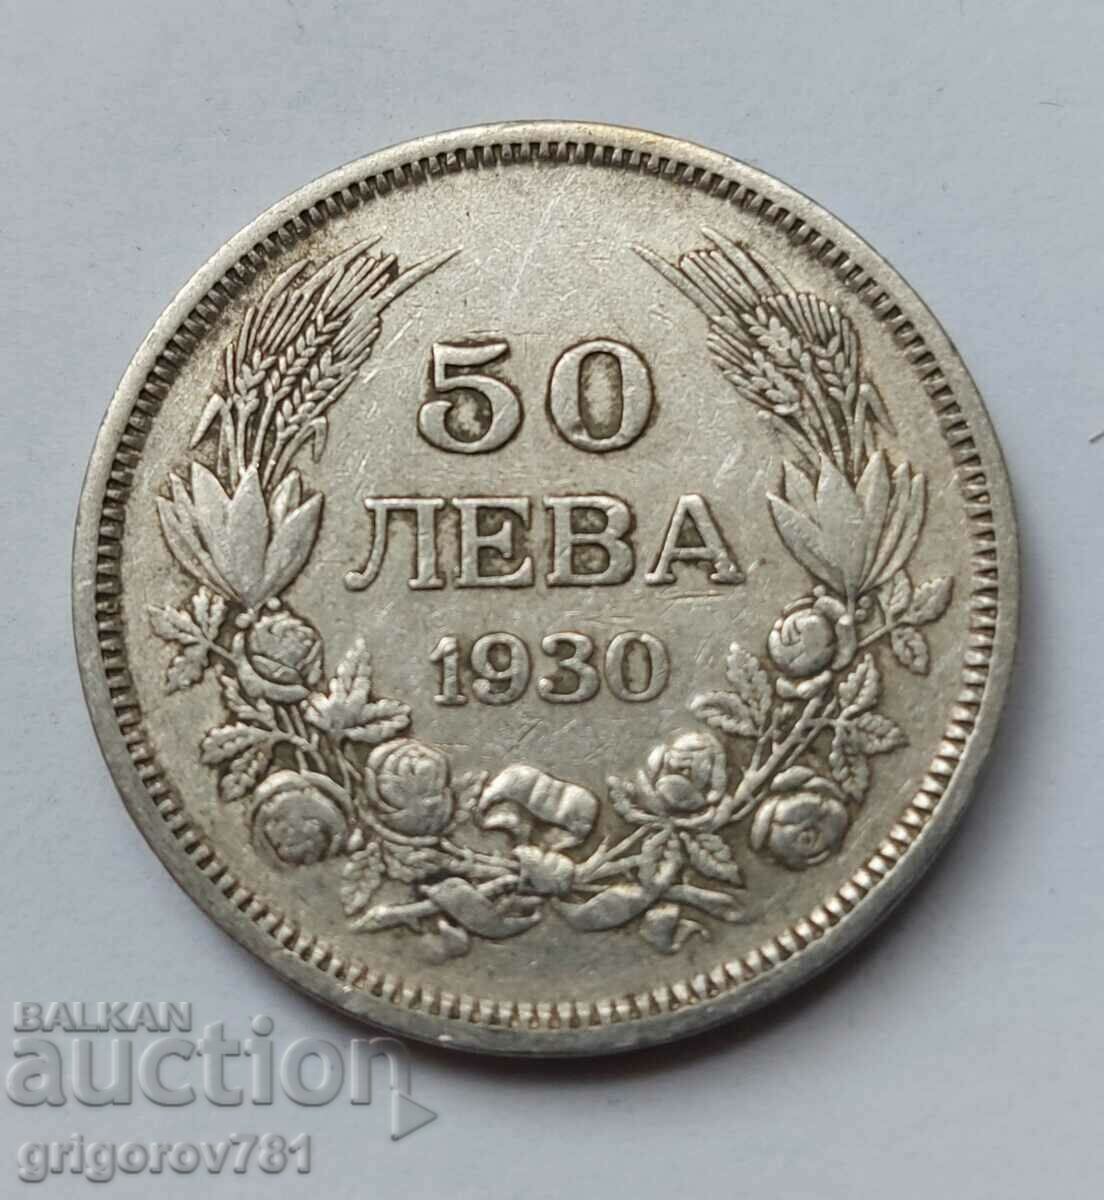 50 leva silver Bulgaria 1930 - silver coin #63